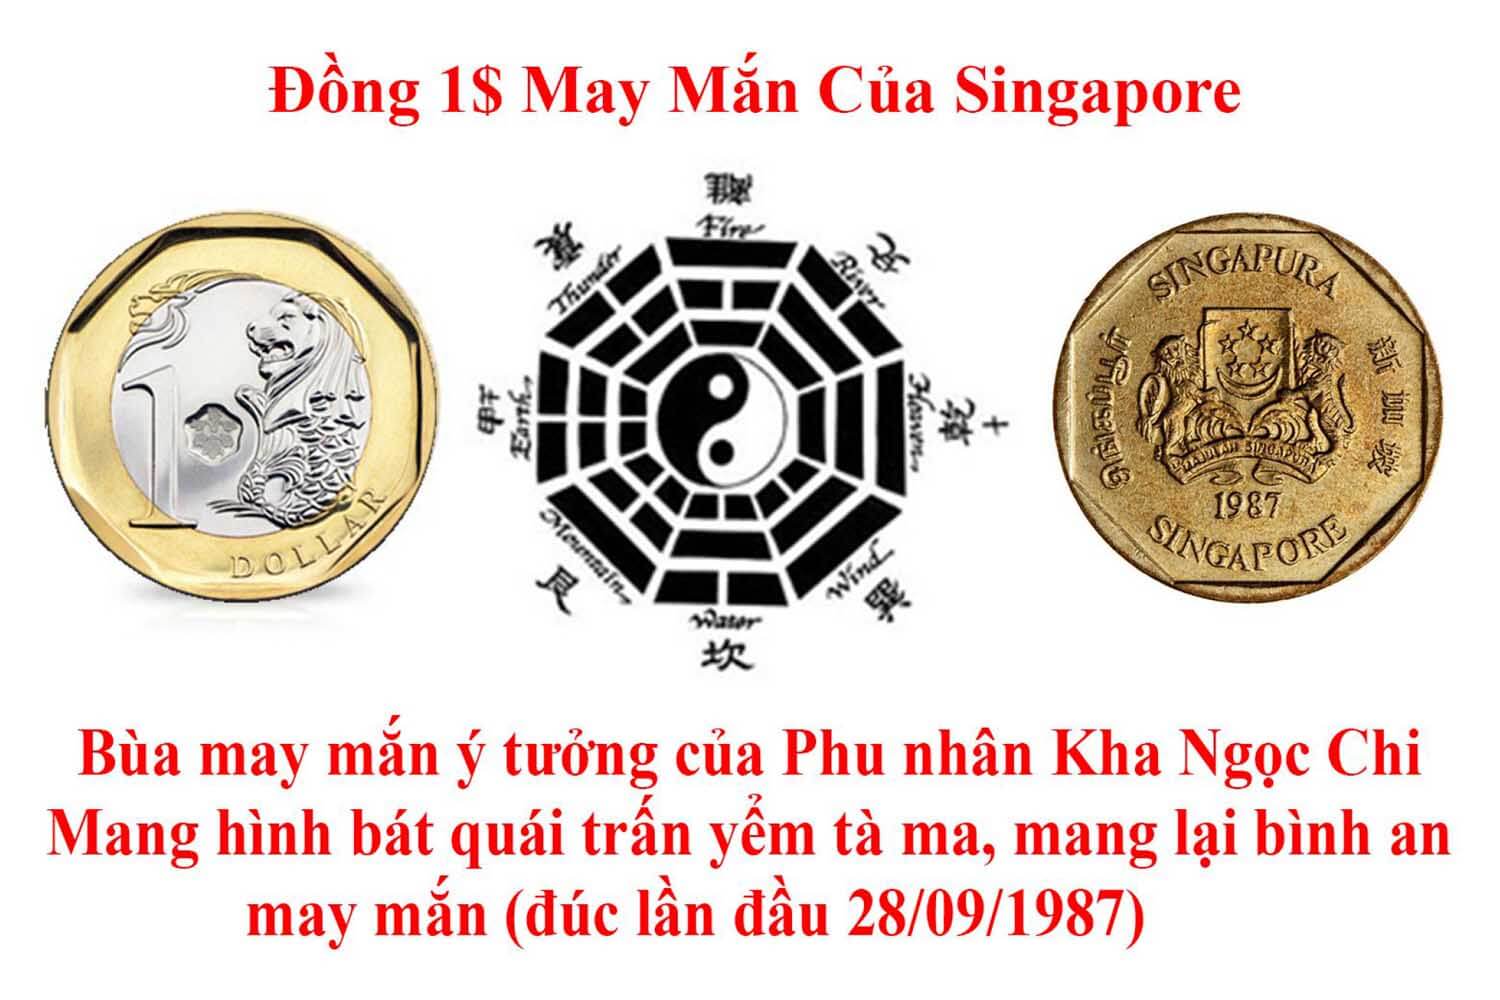 Bí ẩn đồng tiền bát quái của ông Lý Quang Diệu - Vietking Travel